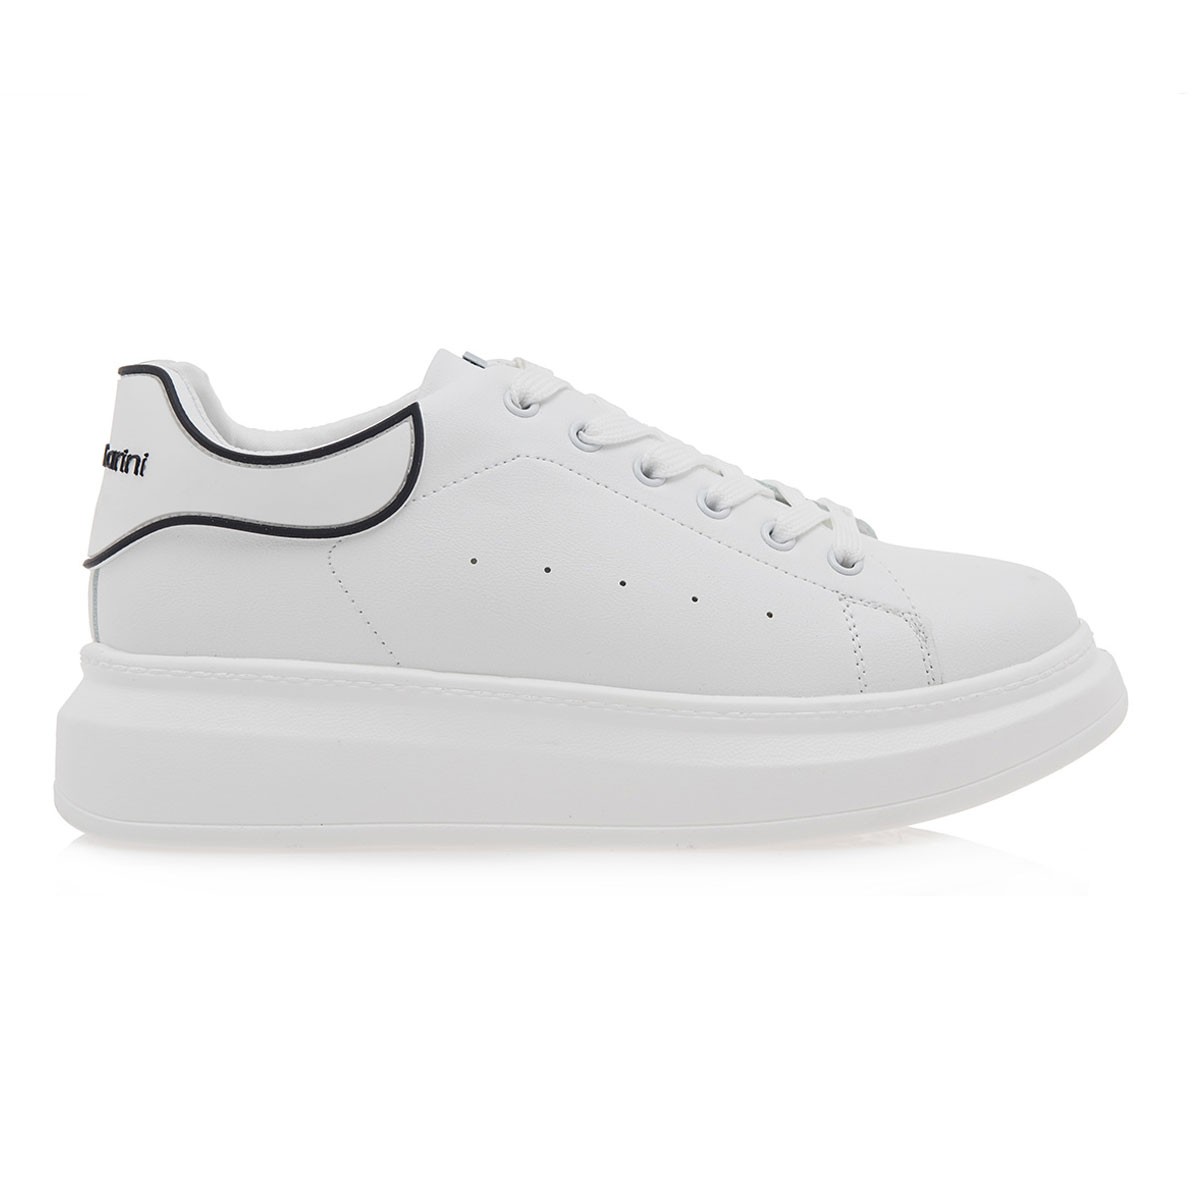 Renato Garini Γυναικεία Παπούτσια Sneakers 011-19R Λευκό Μαύρο O119R0112483